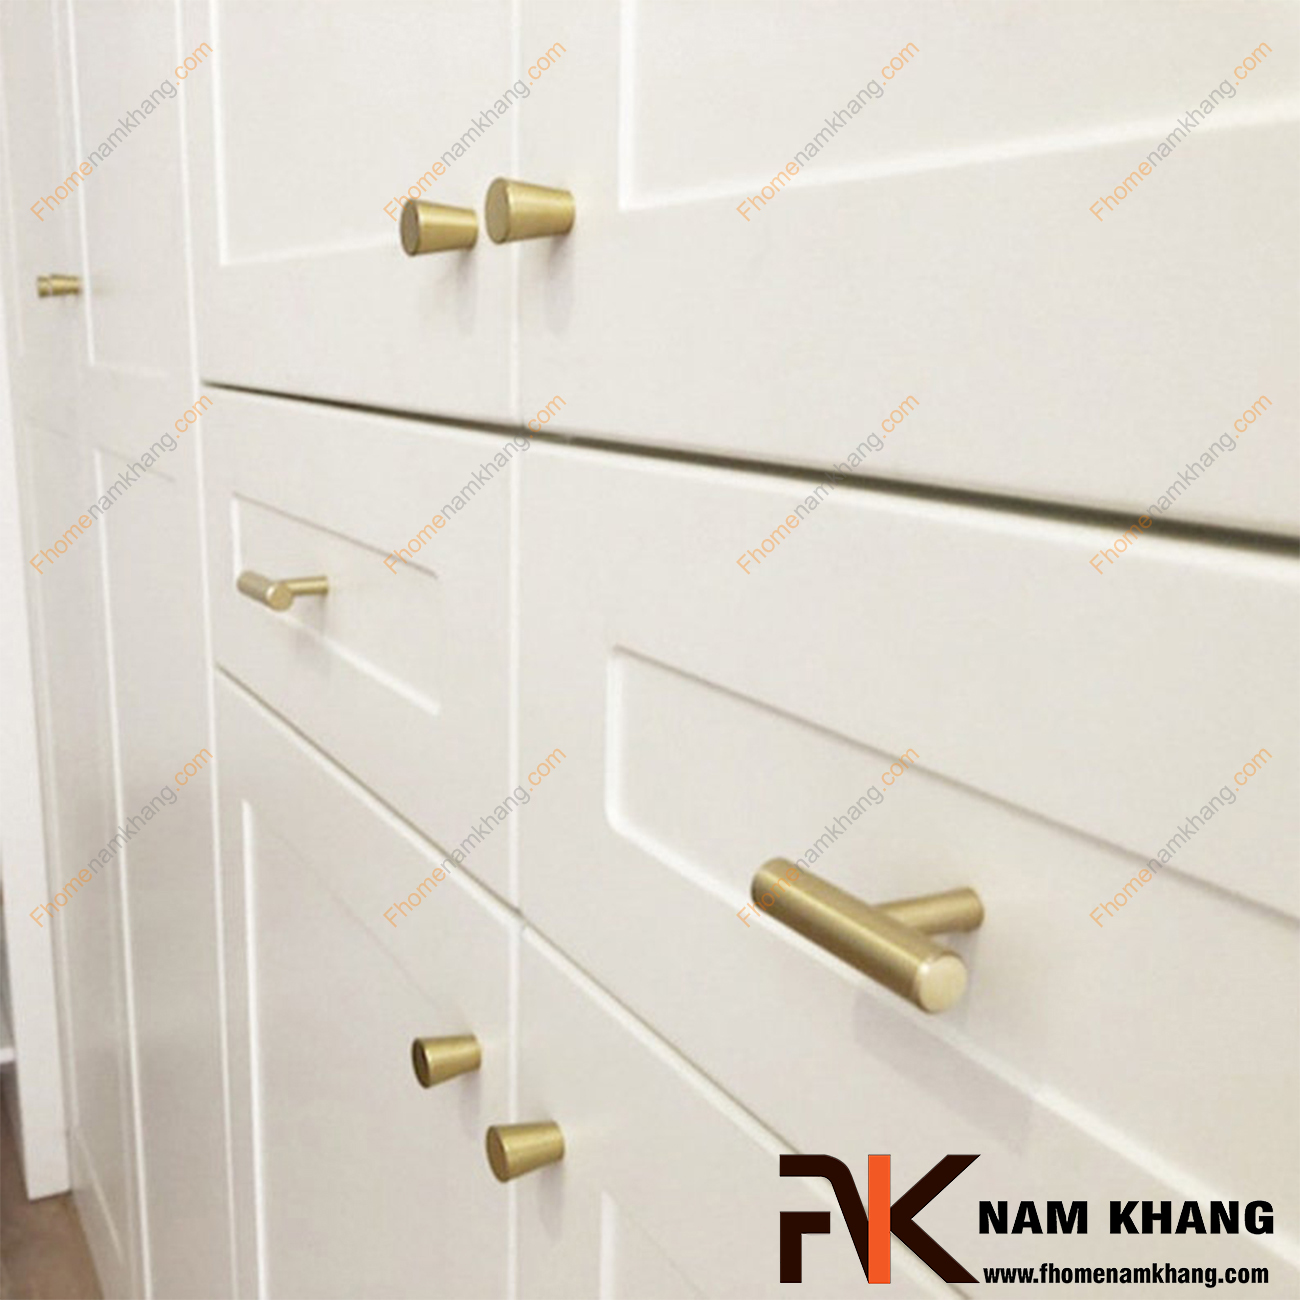 Núm cửa tủ dạng chữ T màu vàng ánh kim NK238-V- sản phẩm phụ kiện tủ dạng chữ T đơn giản - tiện dụng - bền đẹp và dễ dàng phối hợp trên nhiều dạng tủ kệ.